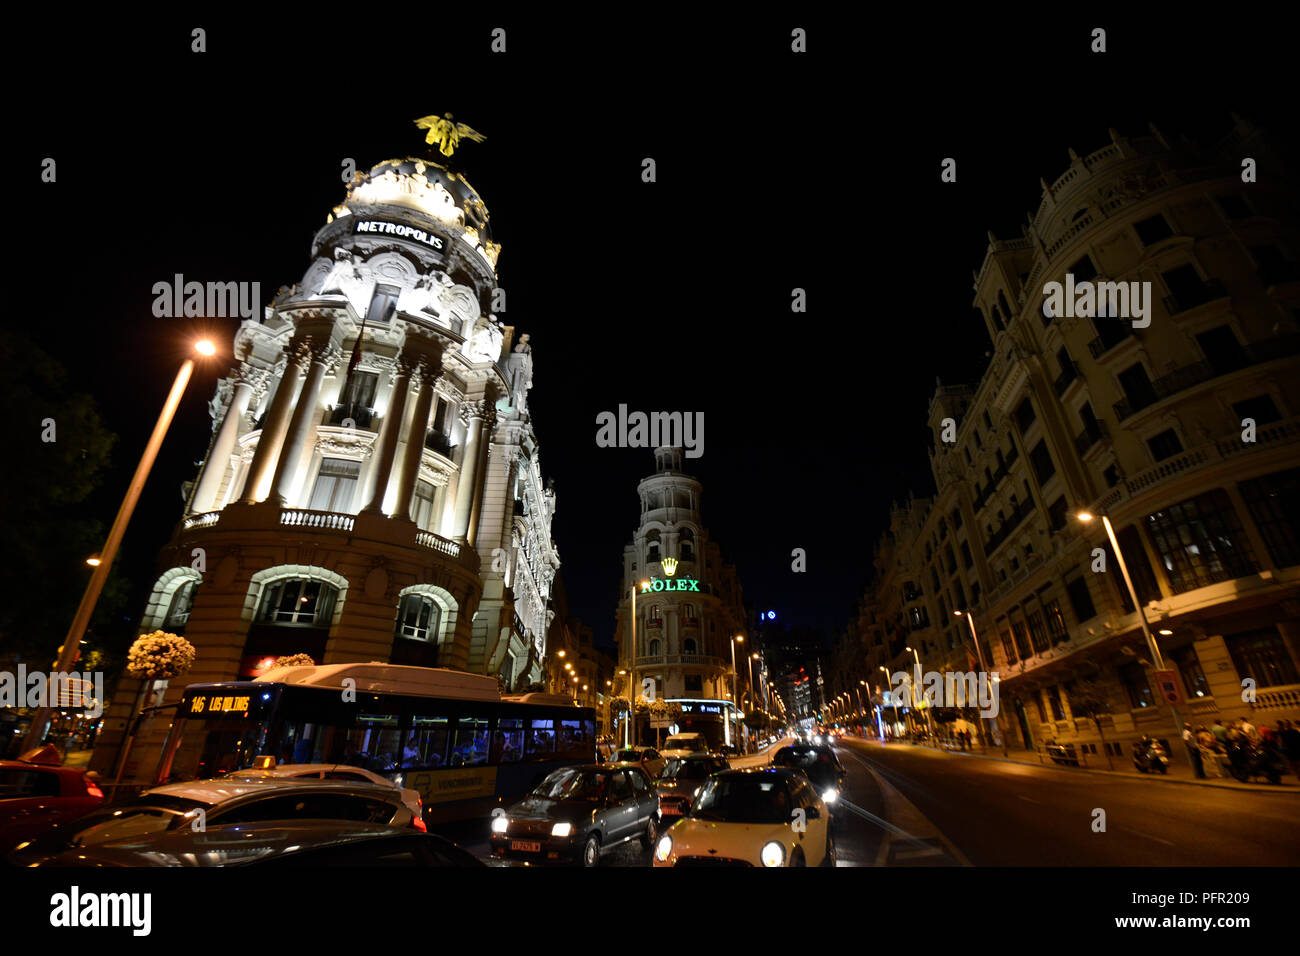 Metropolis Gebäude (Edificio Metropolis), Madrid, Spanien Stockfoto